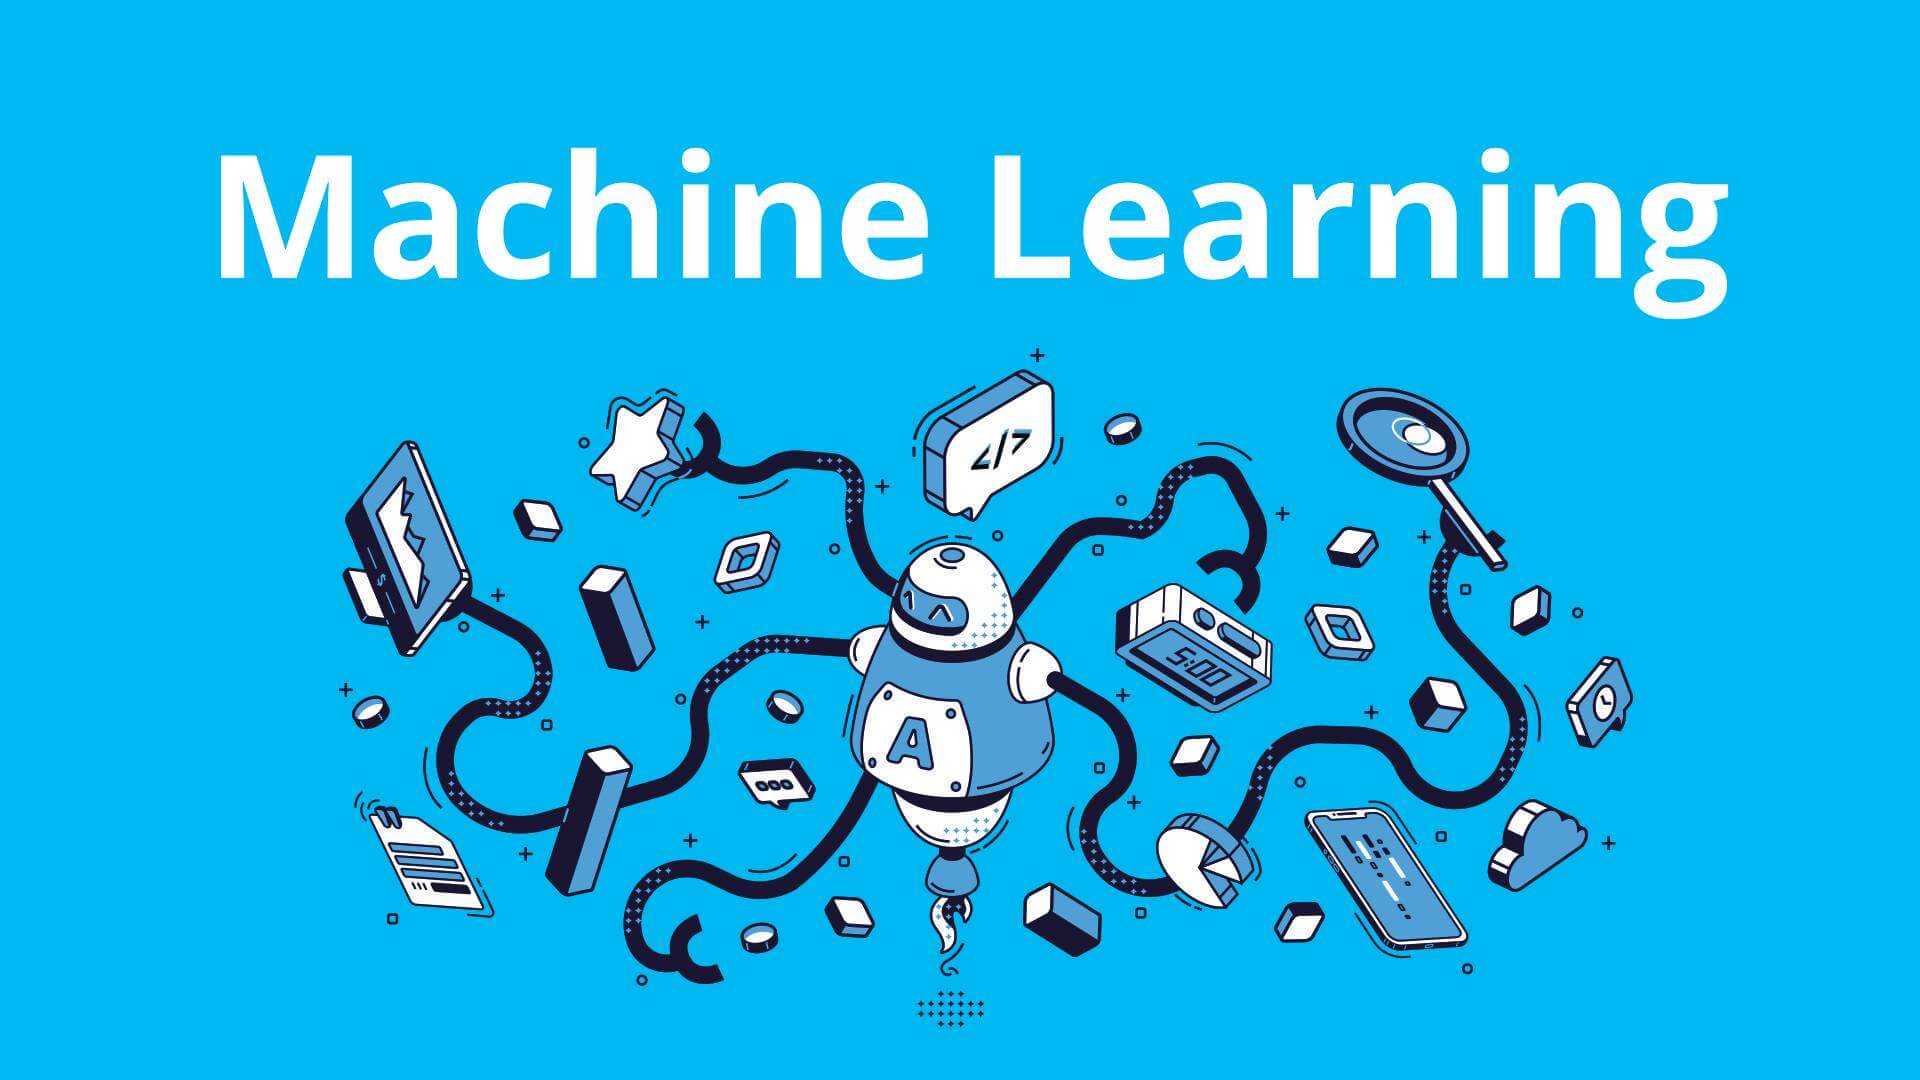 Quy trình hoạt động của machine learning gồm nhiều bước